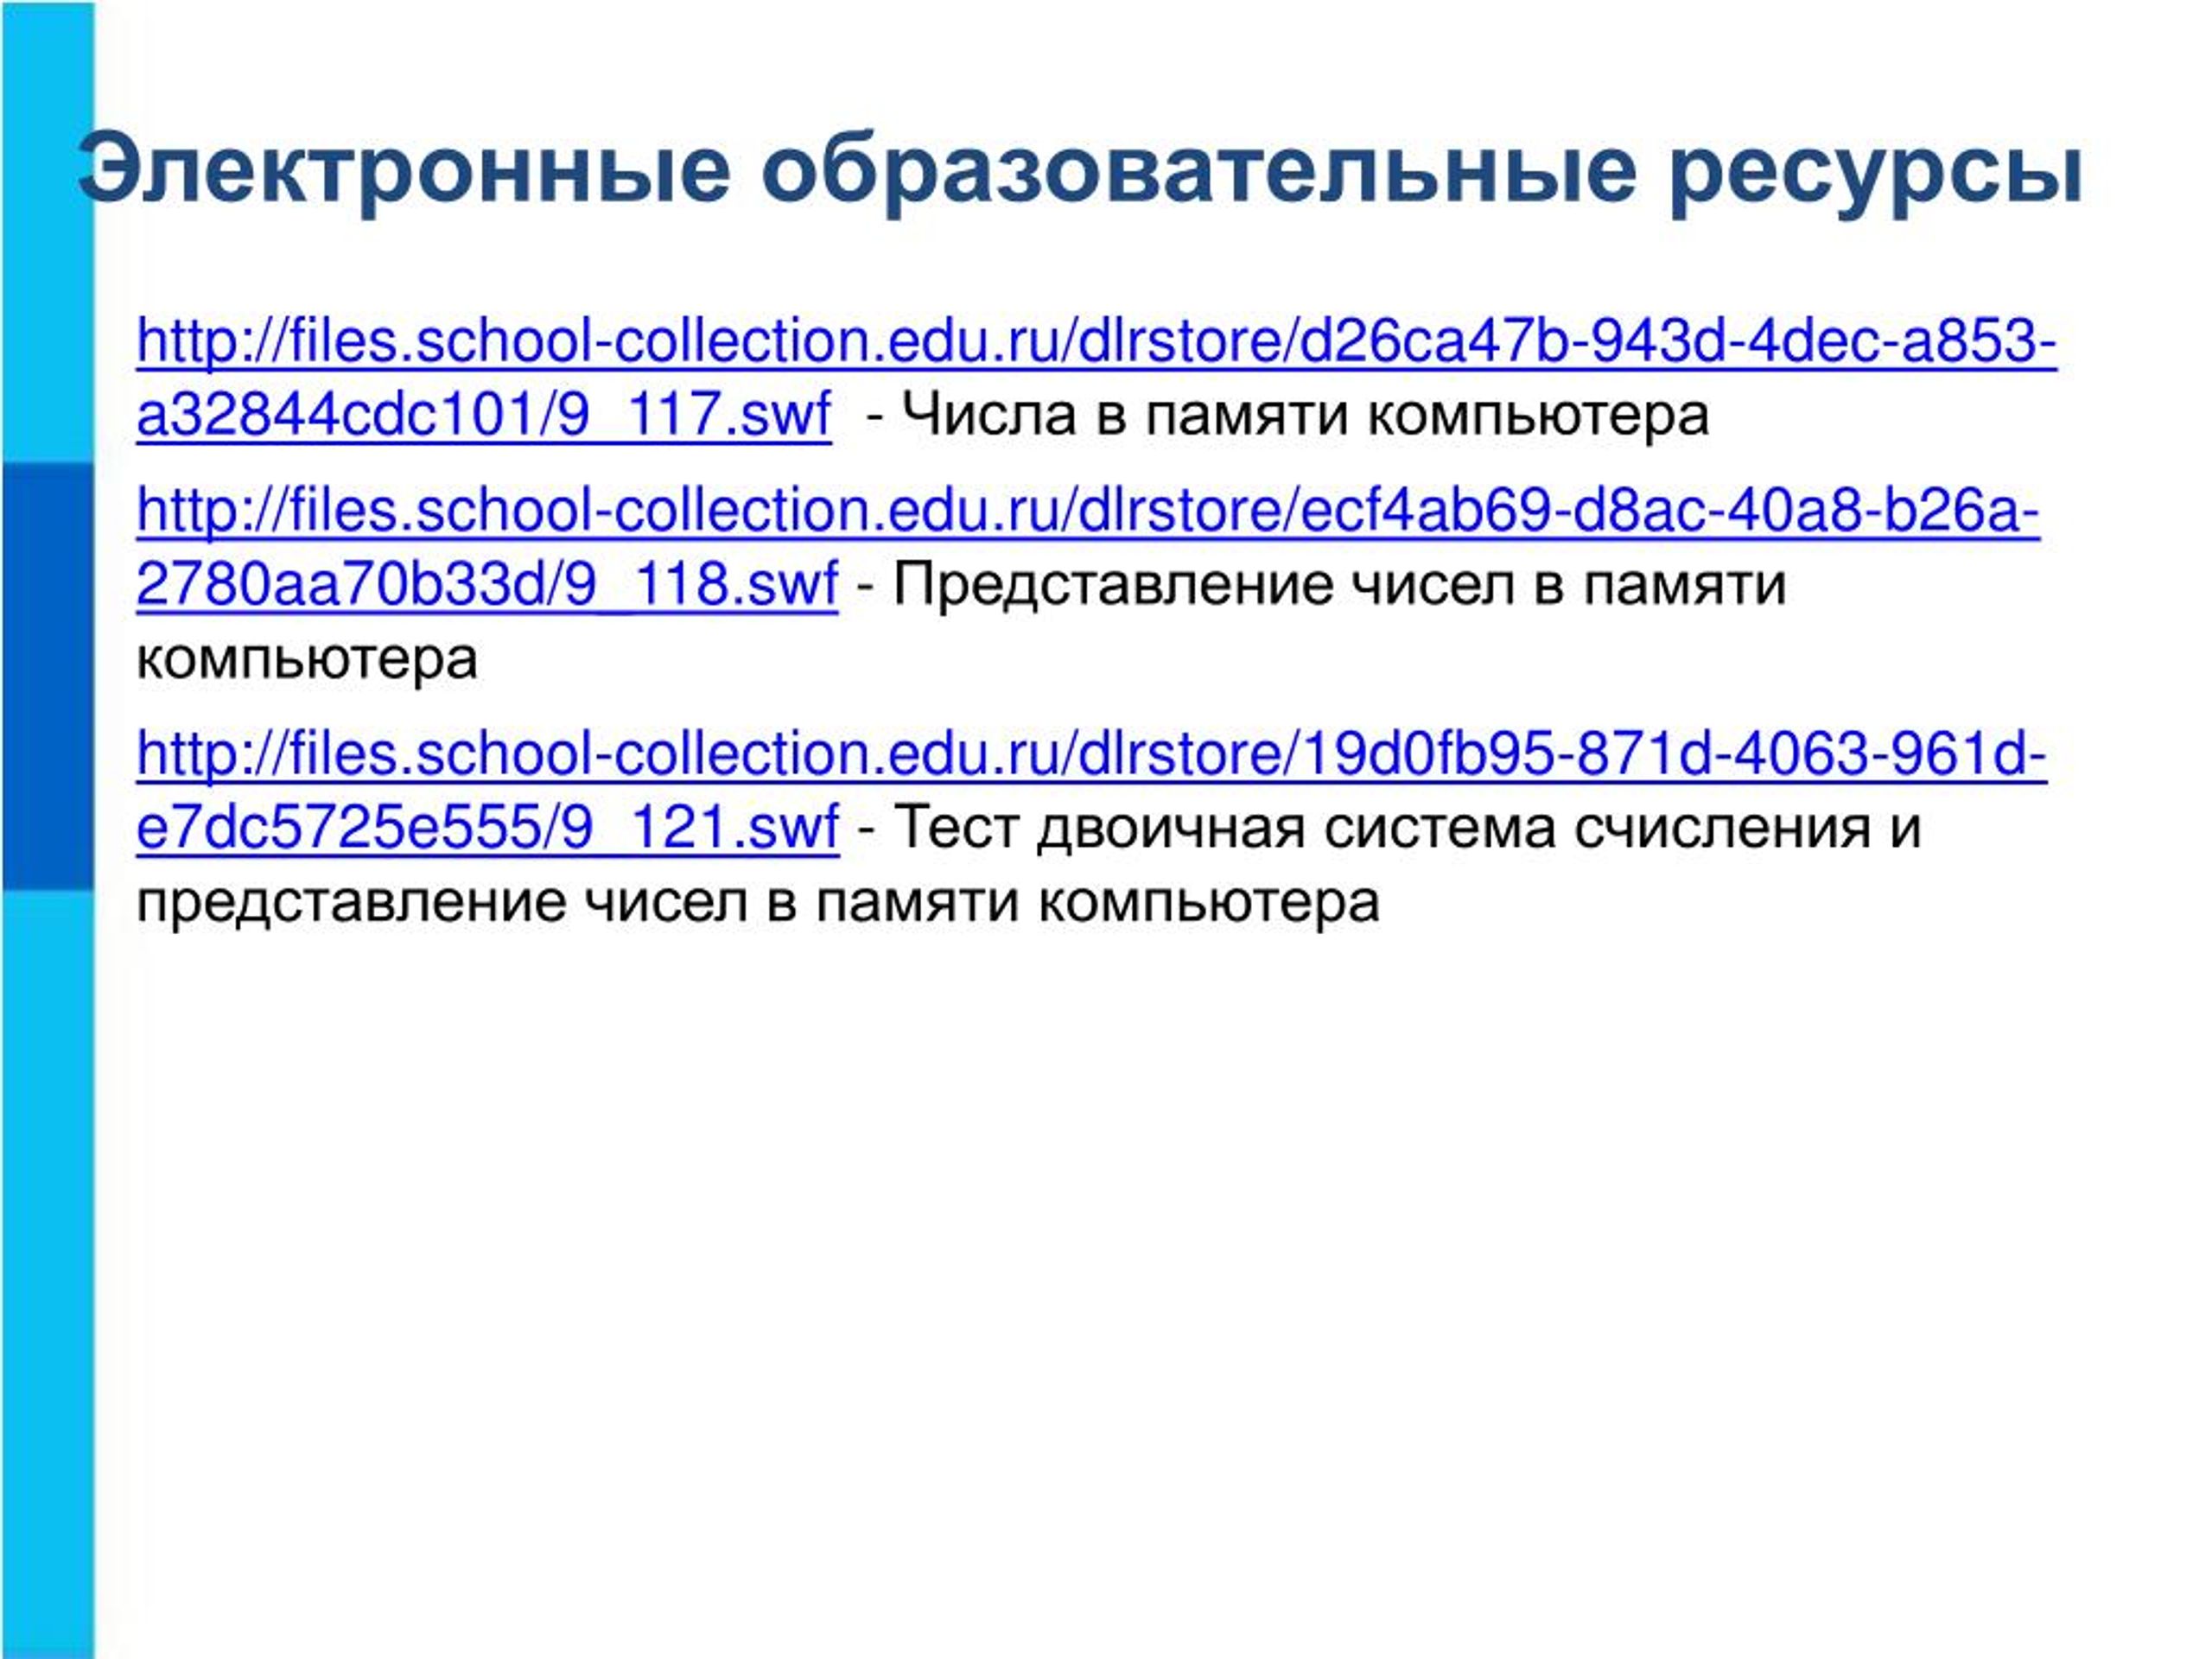 ЭОР по истории. Files collection edu ru